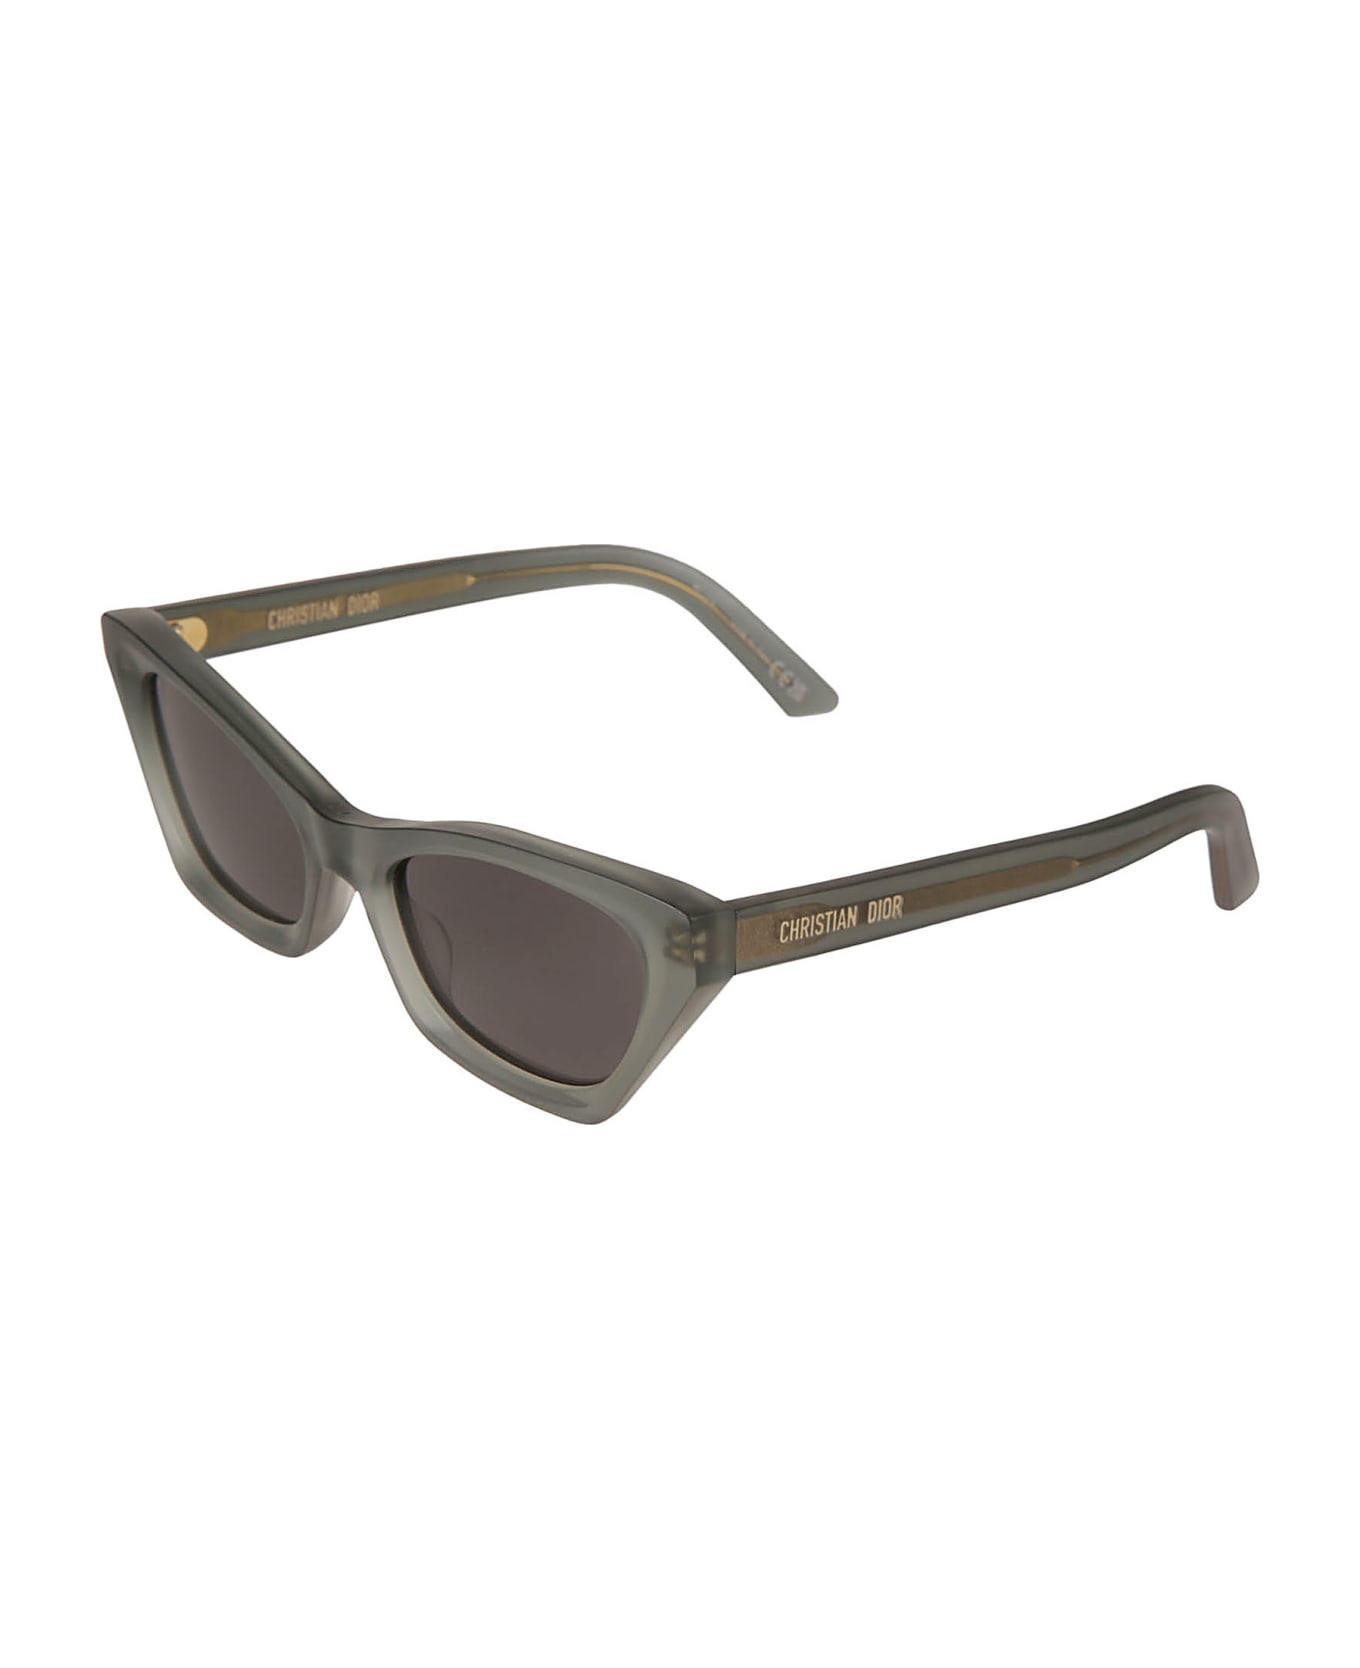 Dior Eyewear Diormidnight Sunglasses - 56a0